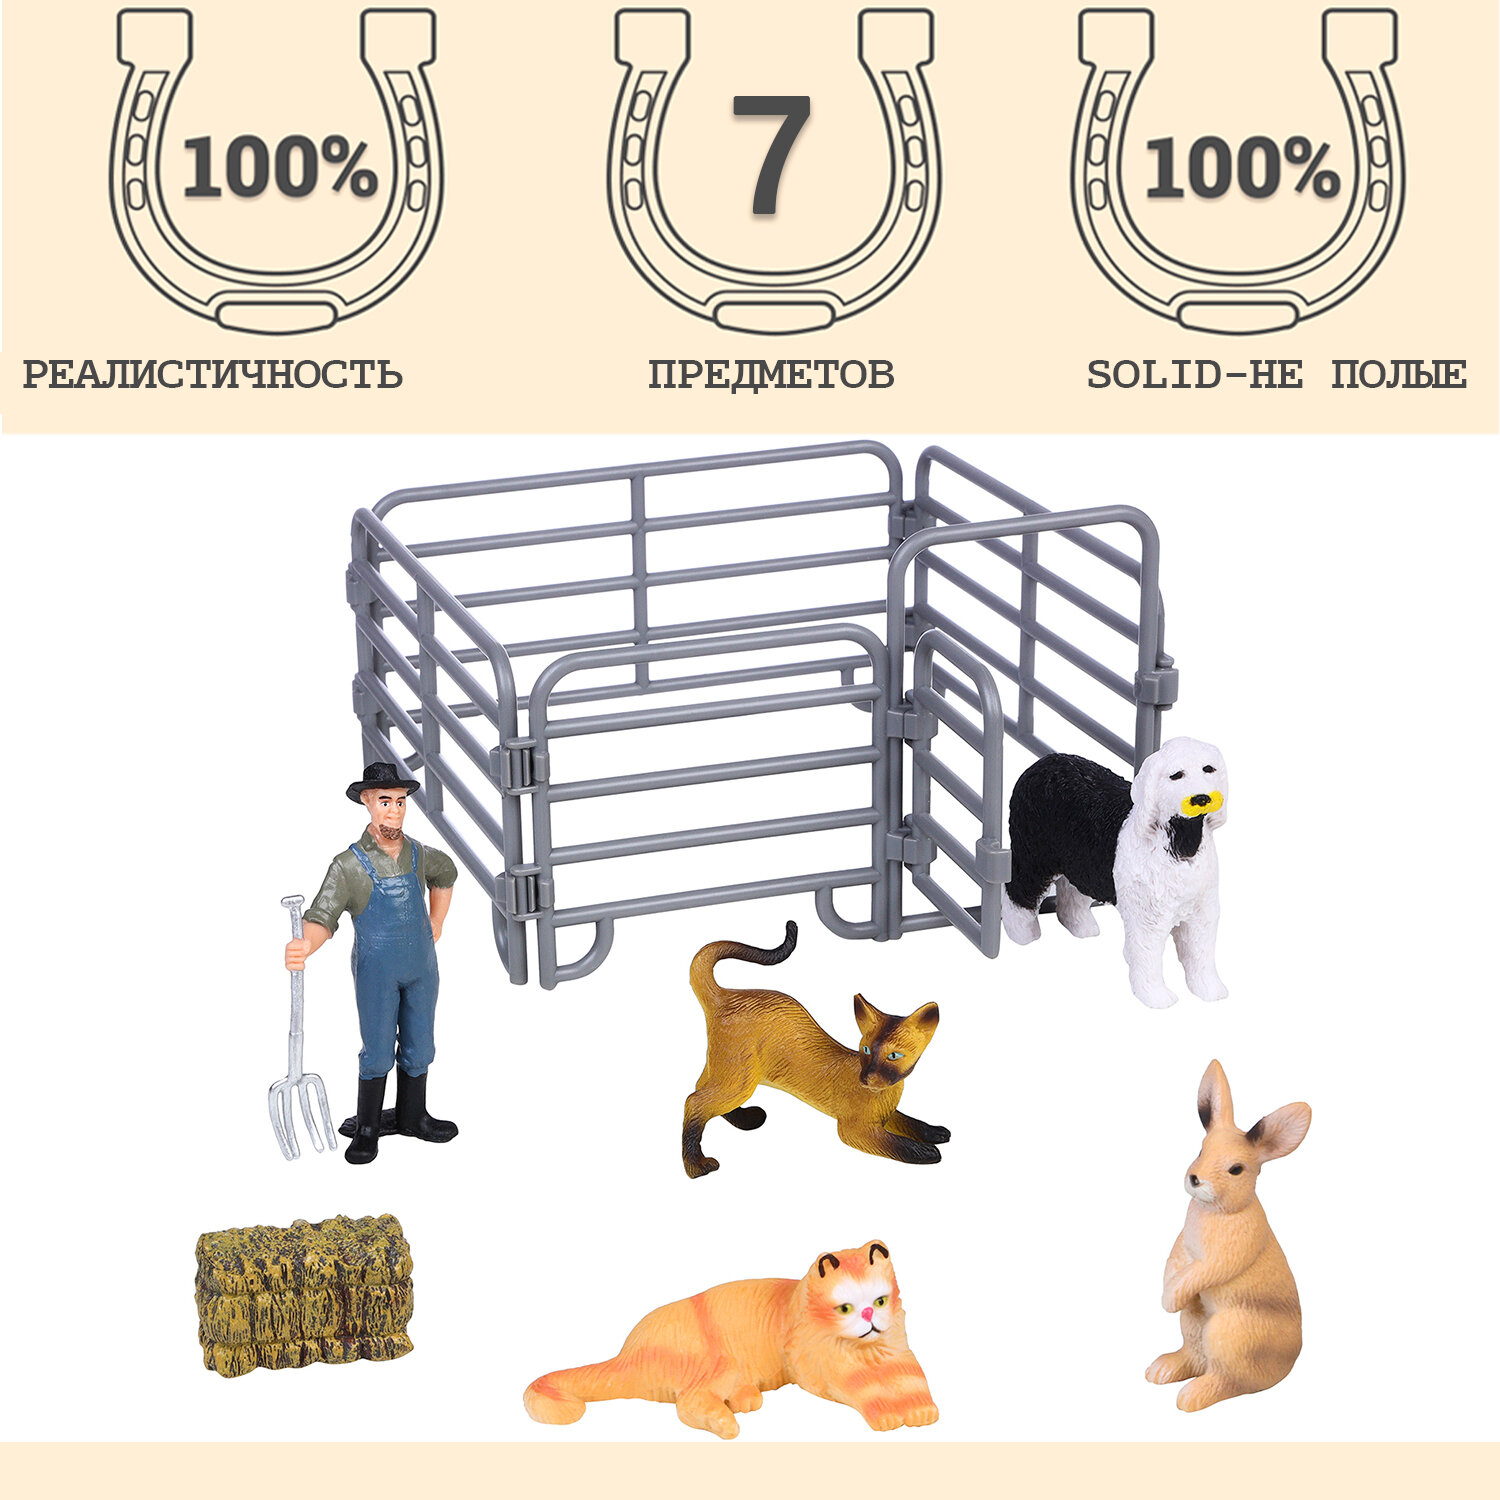 Фигурки животных серии "На ферме": 2 кошки, собака, кролик, фермер, ограждение (набор из 7 предметов)